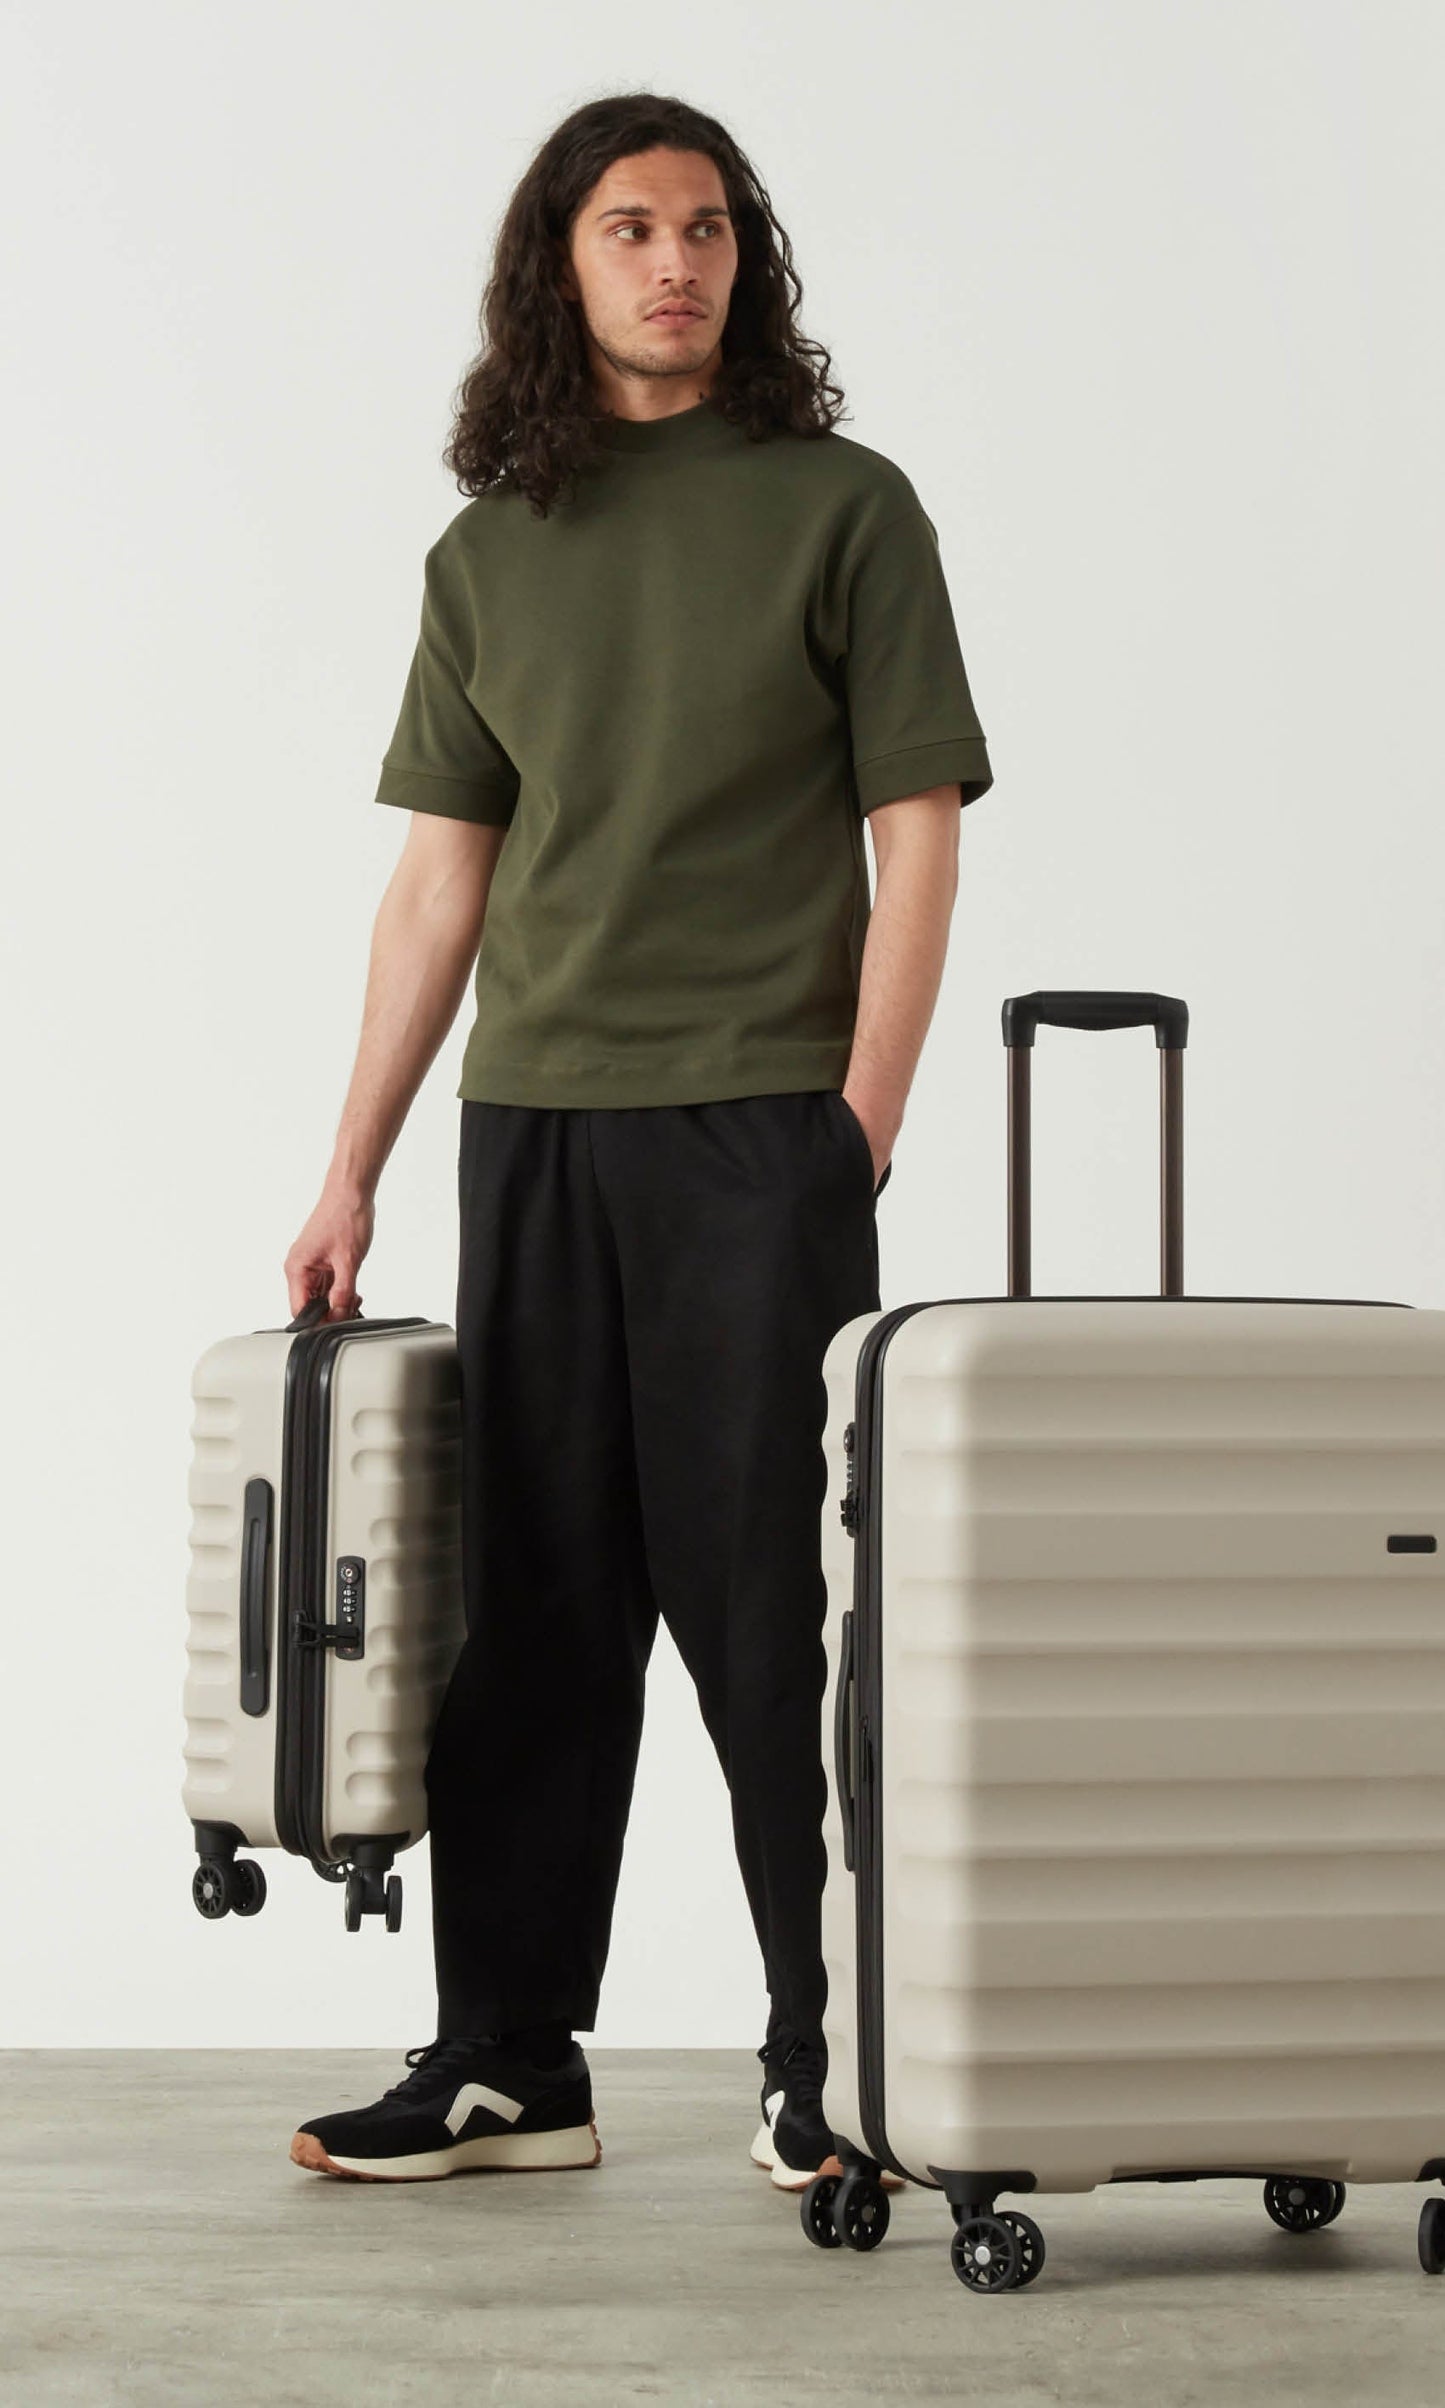 Antler Luggage -  Clifton set in navy - Hard Suitcases Clifton Set of 3 Suitcases Navy | Hard Suitcase | Antler UK